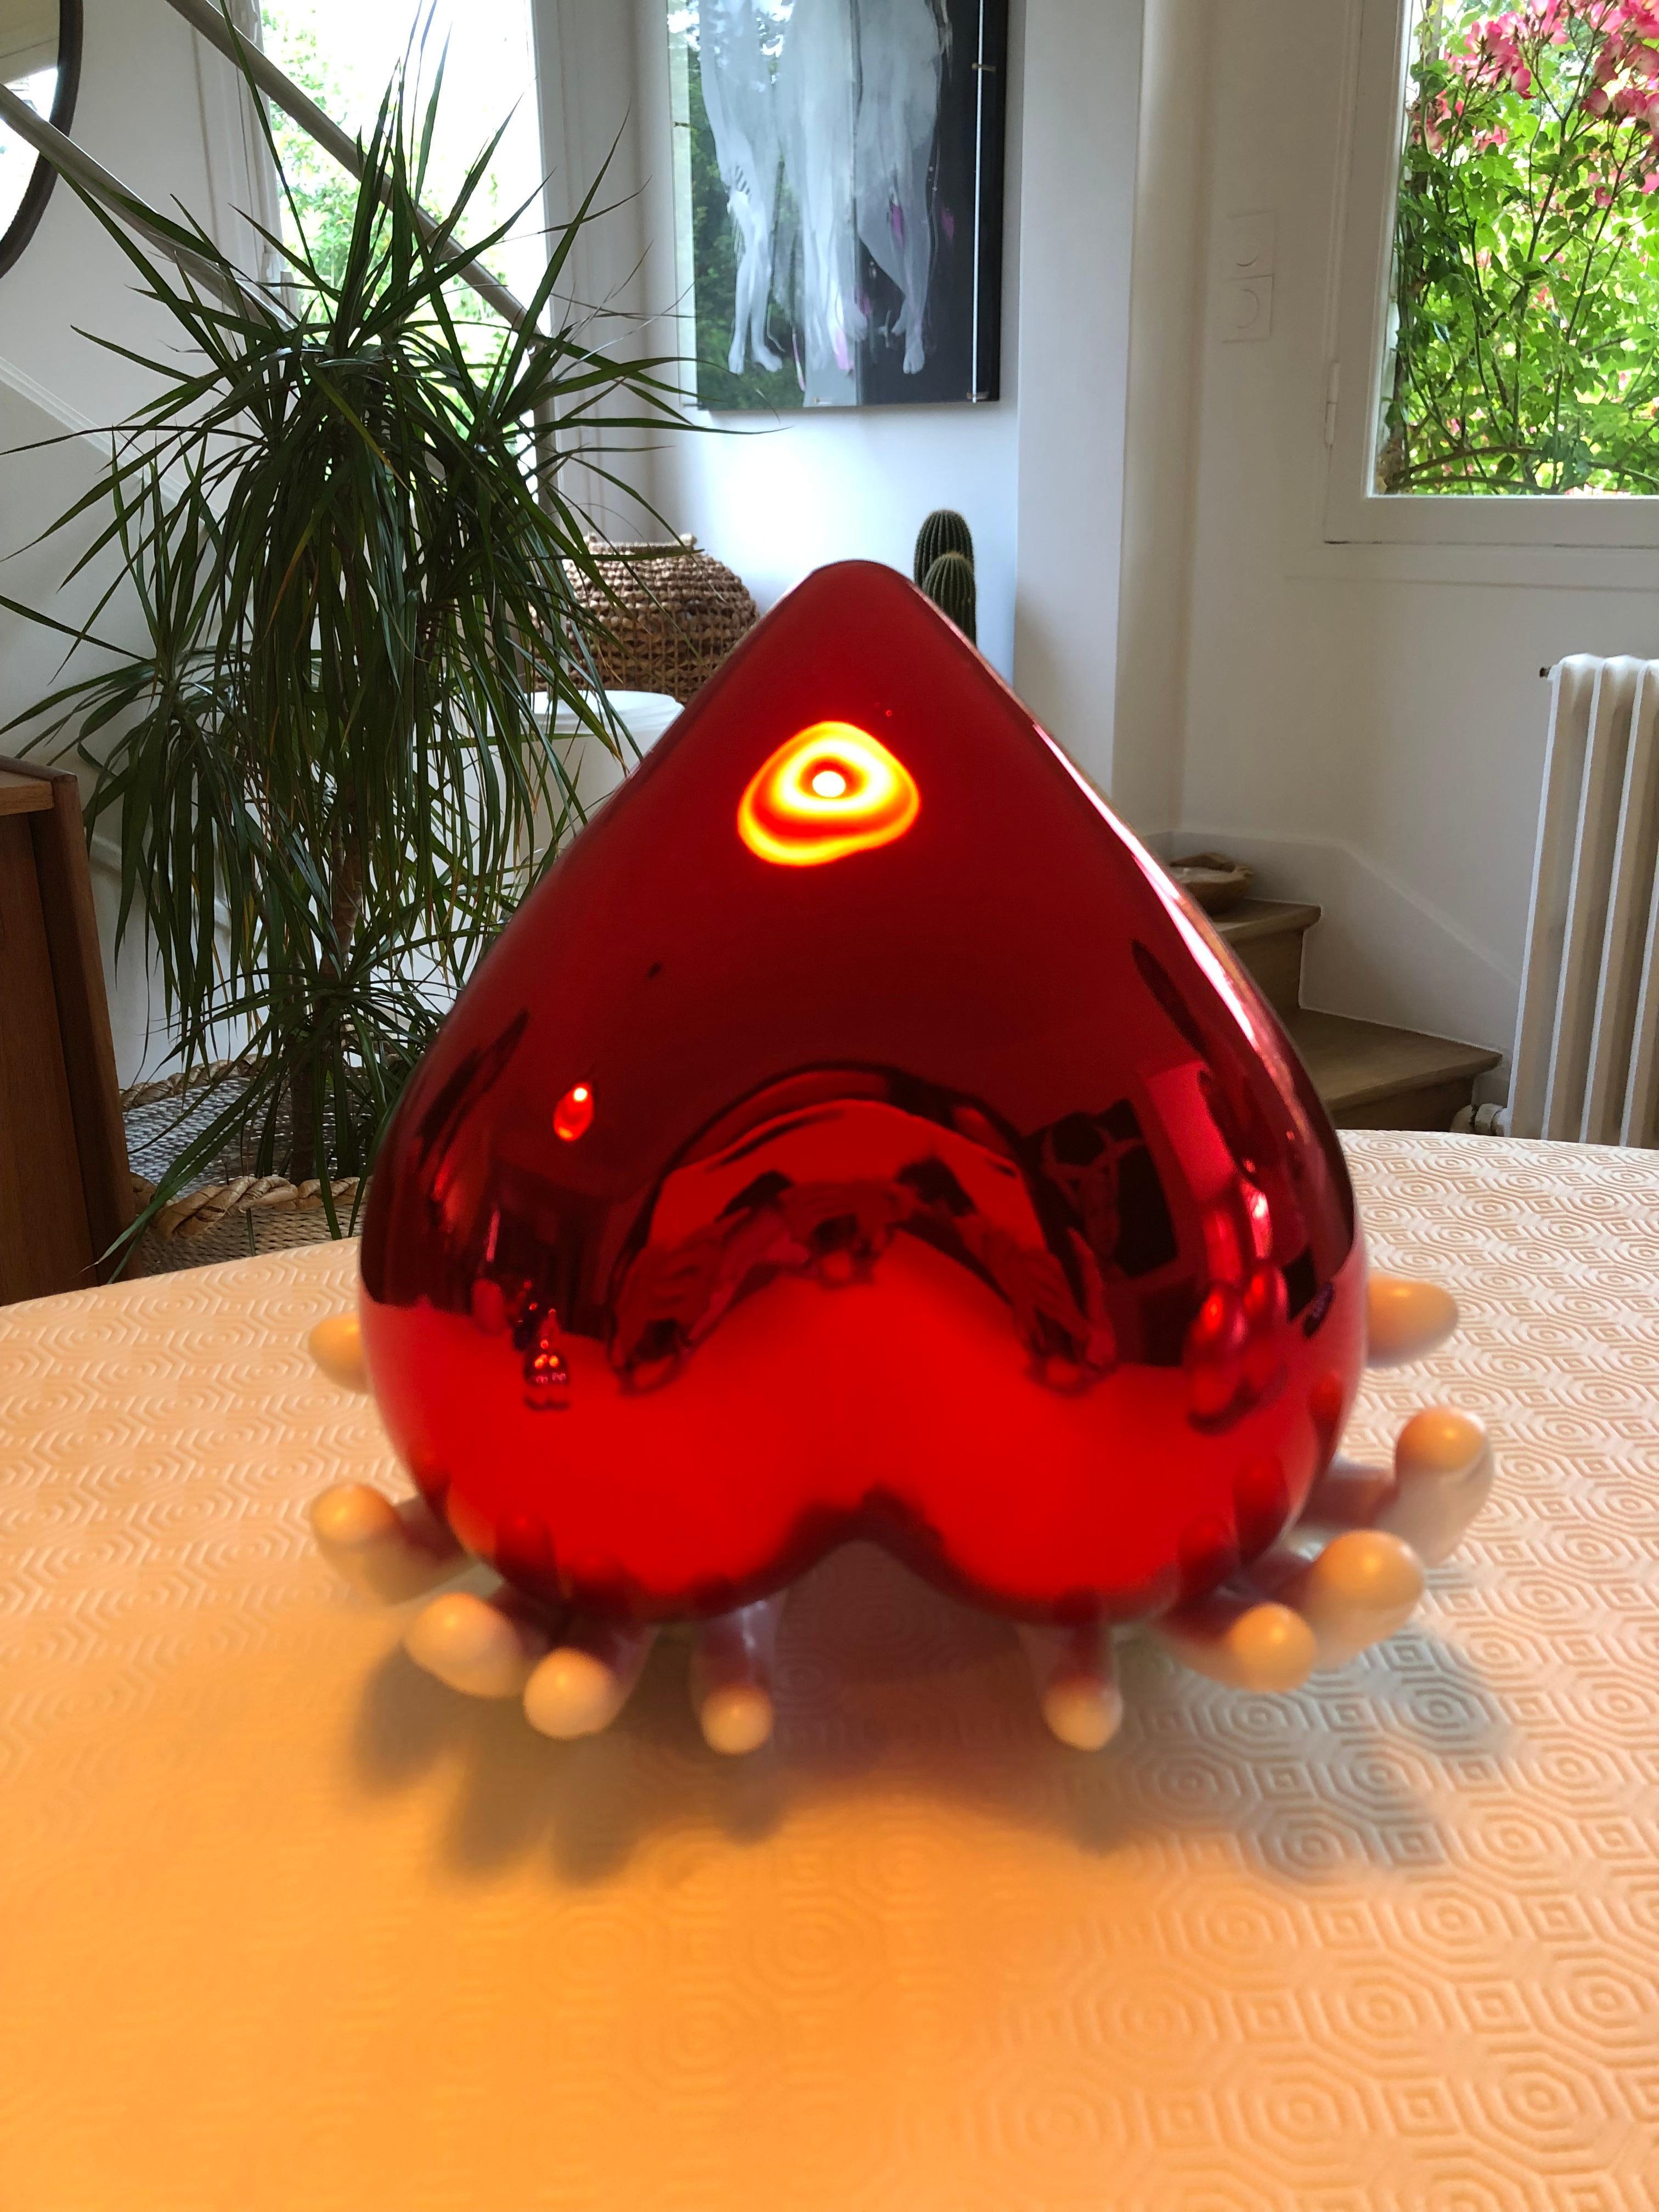 Open Heart - Red - Sculpture by Cat Sirot